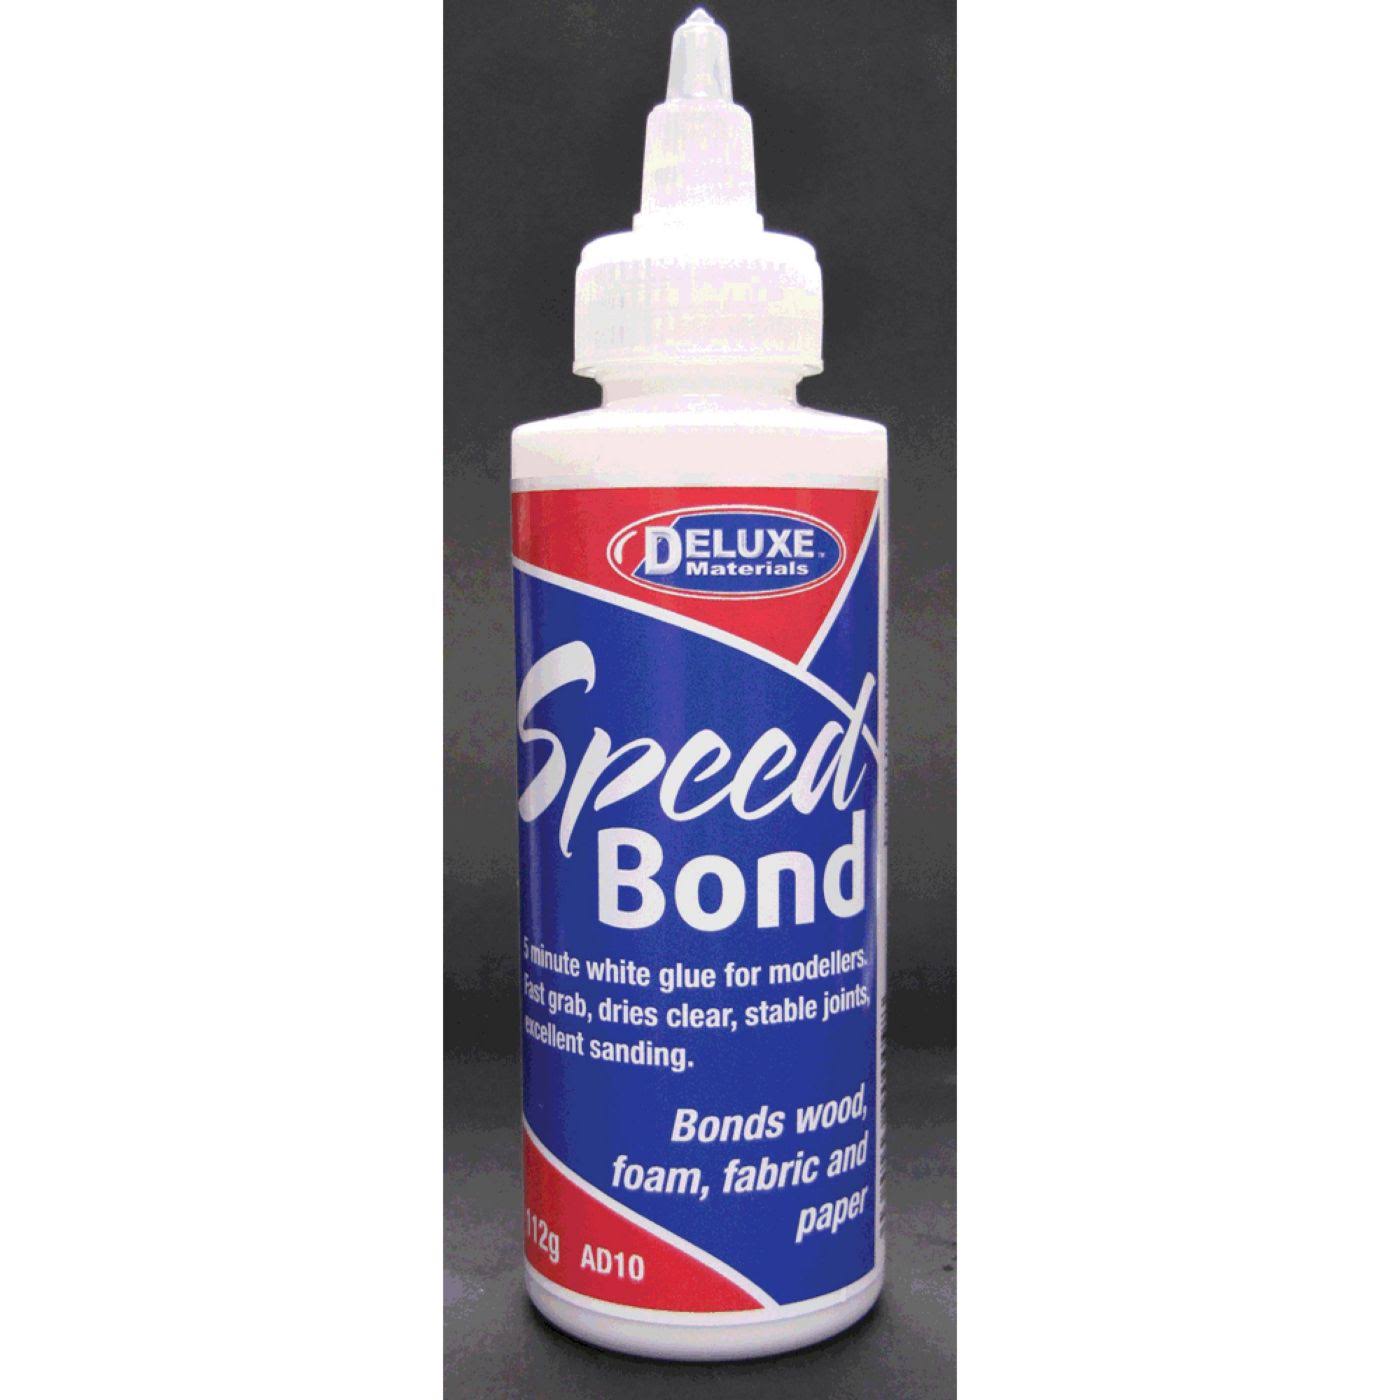 Deluxe Materials - AD10 Speedbond, White Glue, 4oz